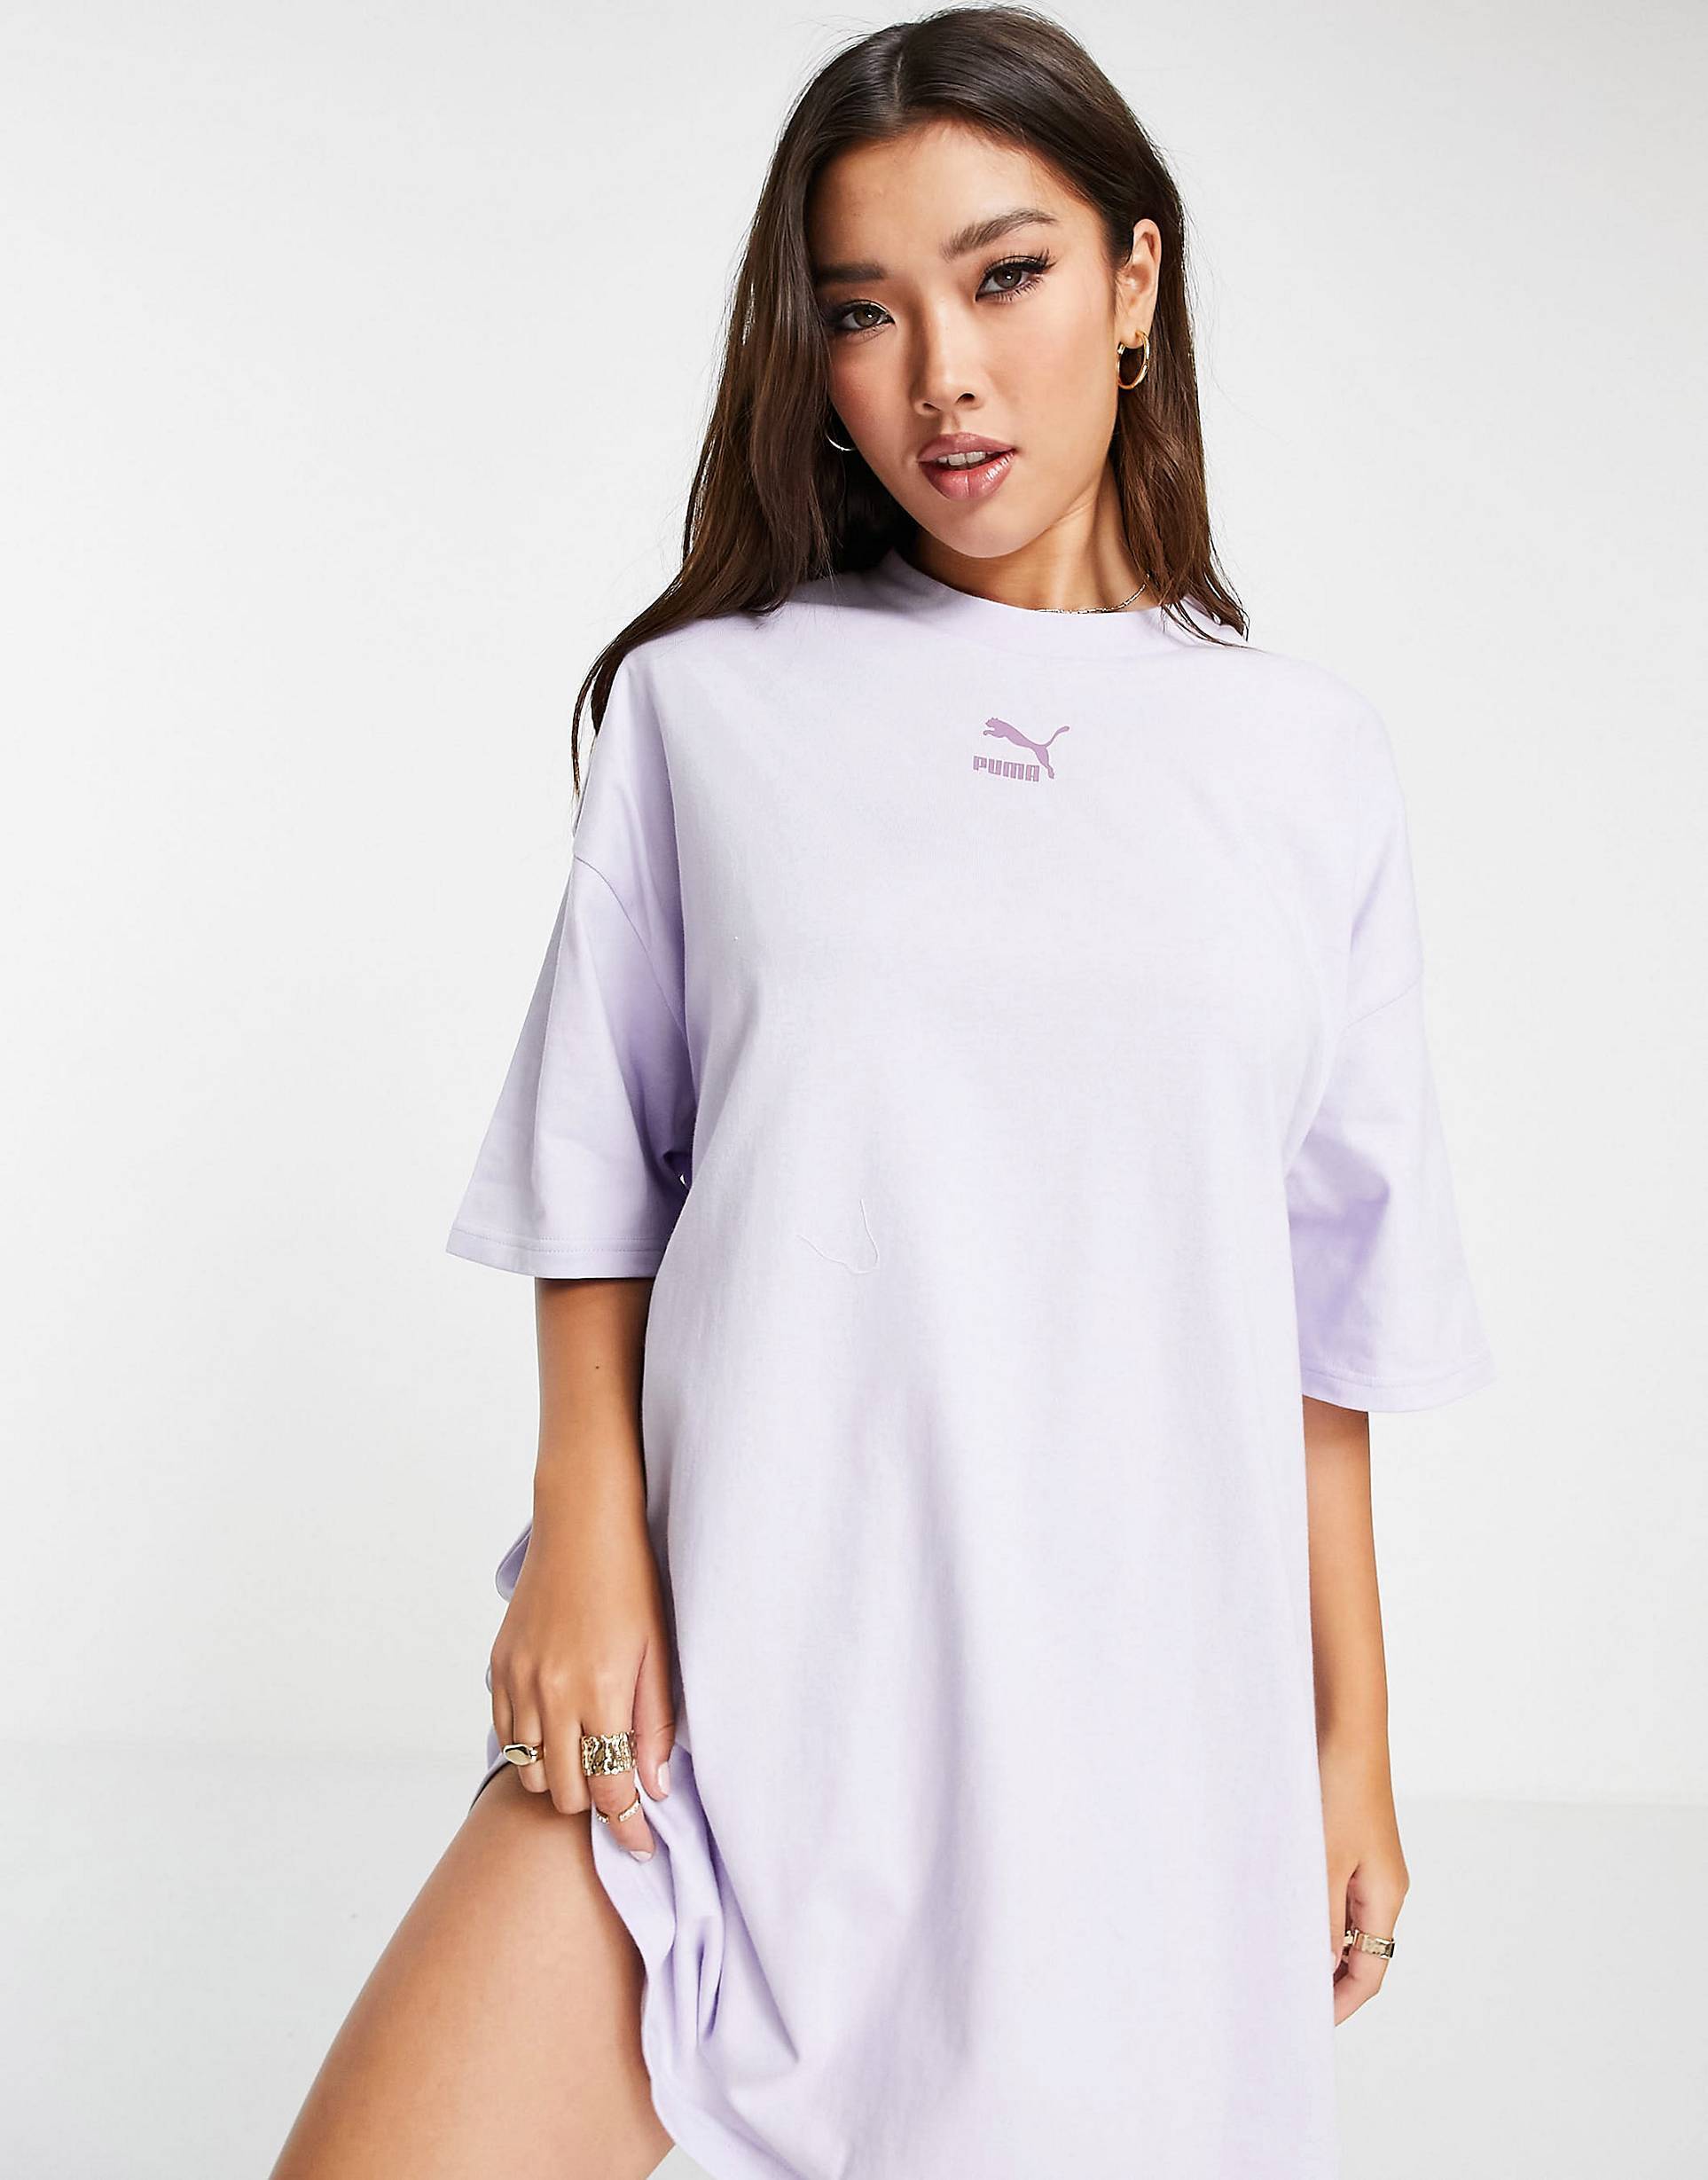 Puma classics tee dress in lilac